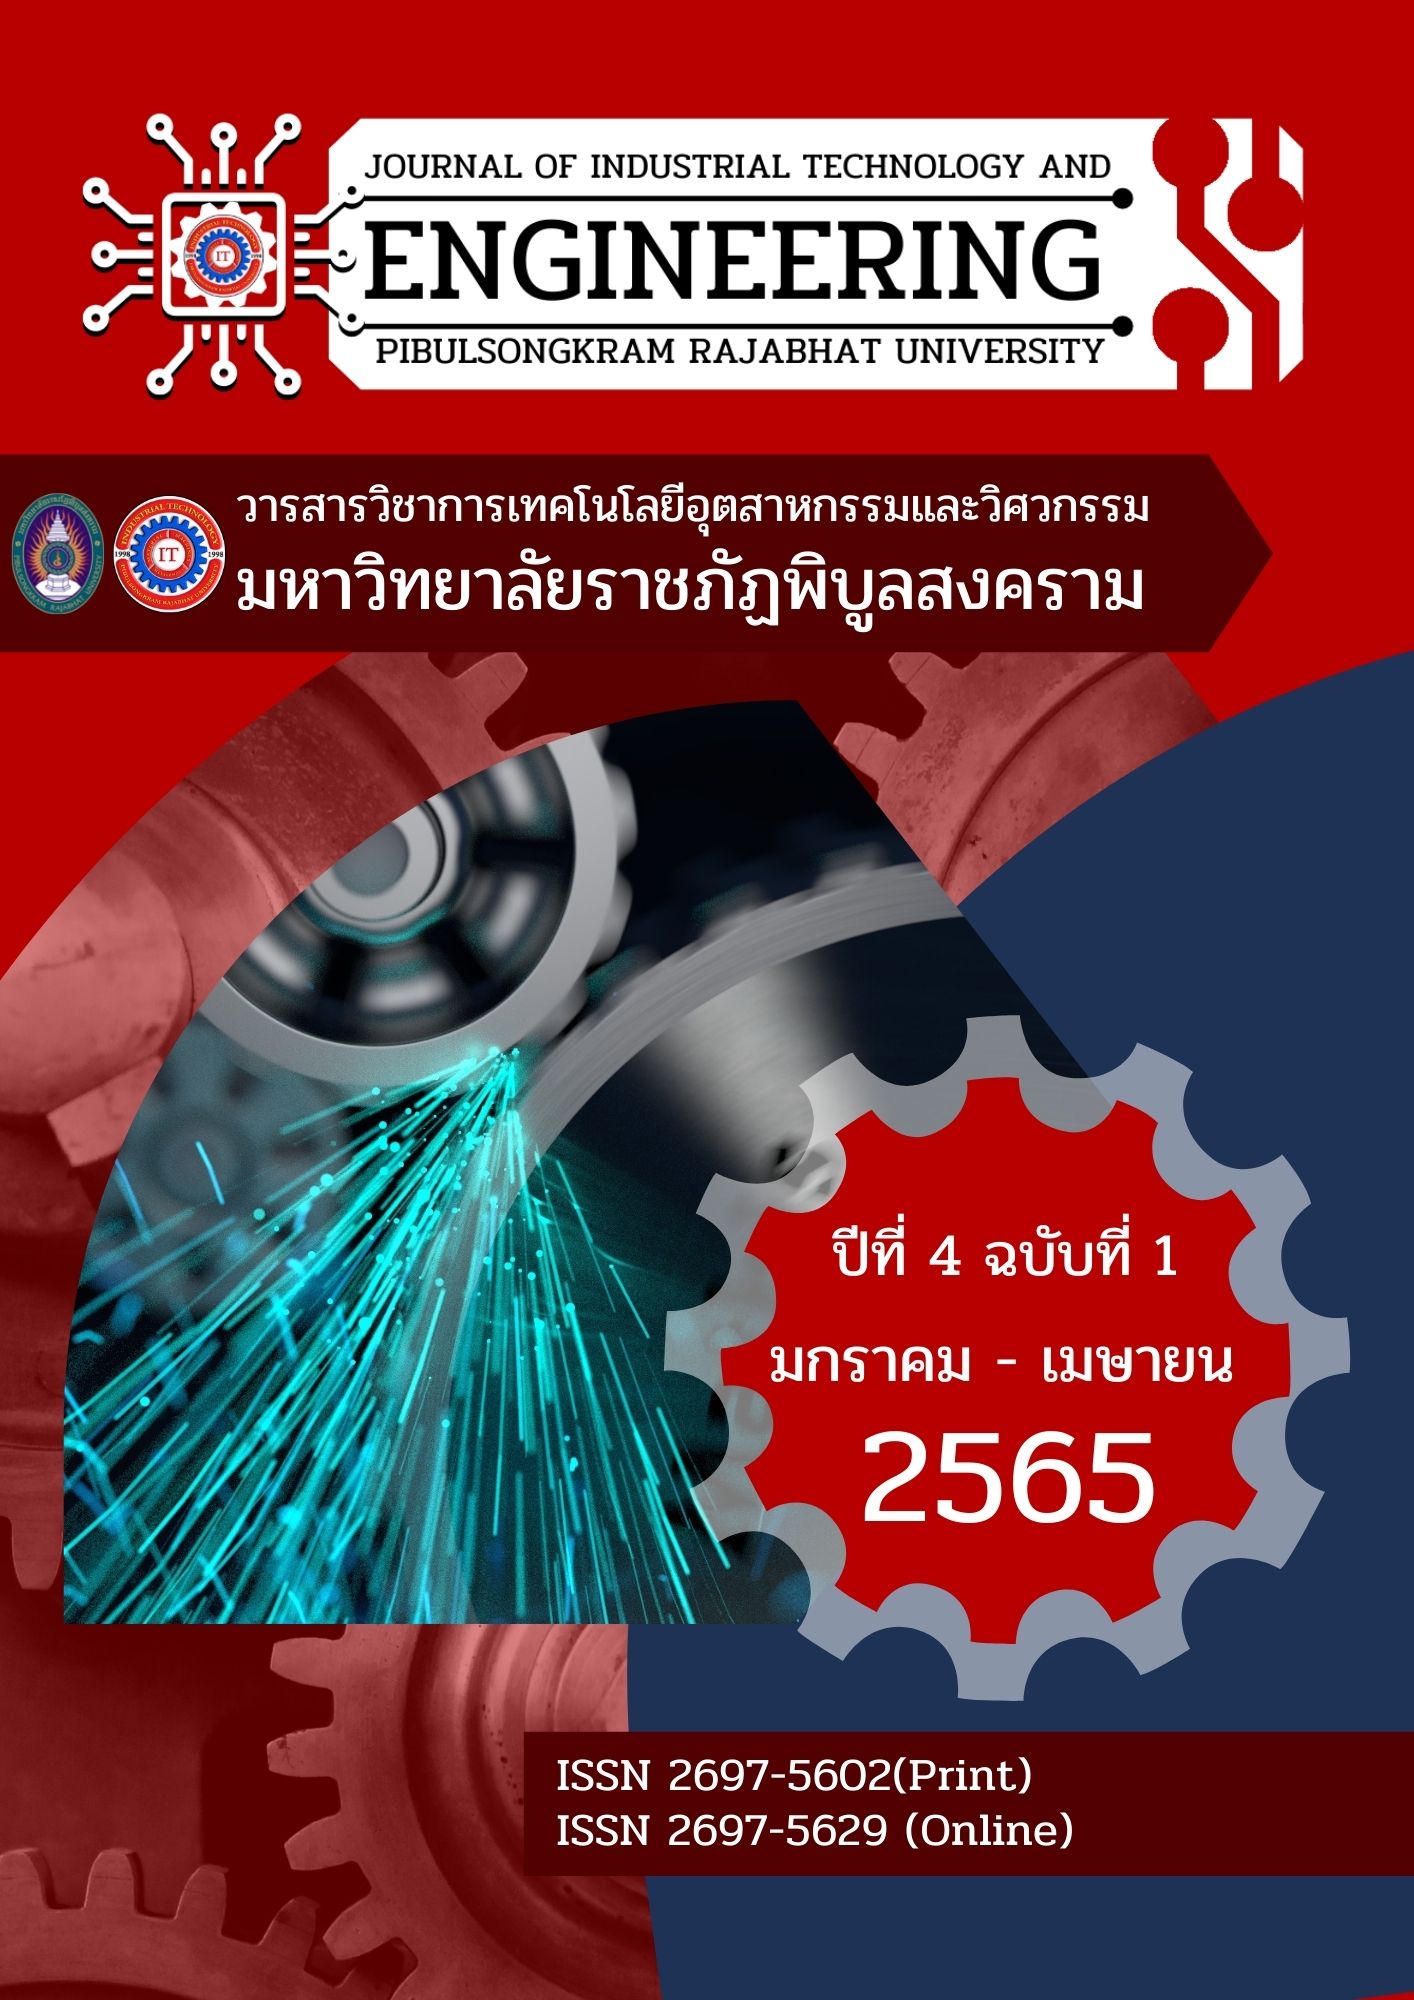 					ดู ปีที่ 4 ฉบับที่ 1 (2022): January 2022 - April 2022 (PSRU Journal of Industrial Technology and Engineering)
				